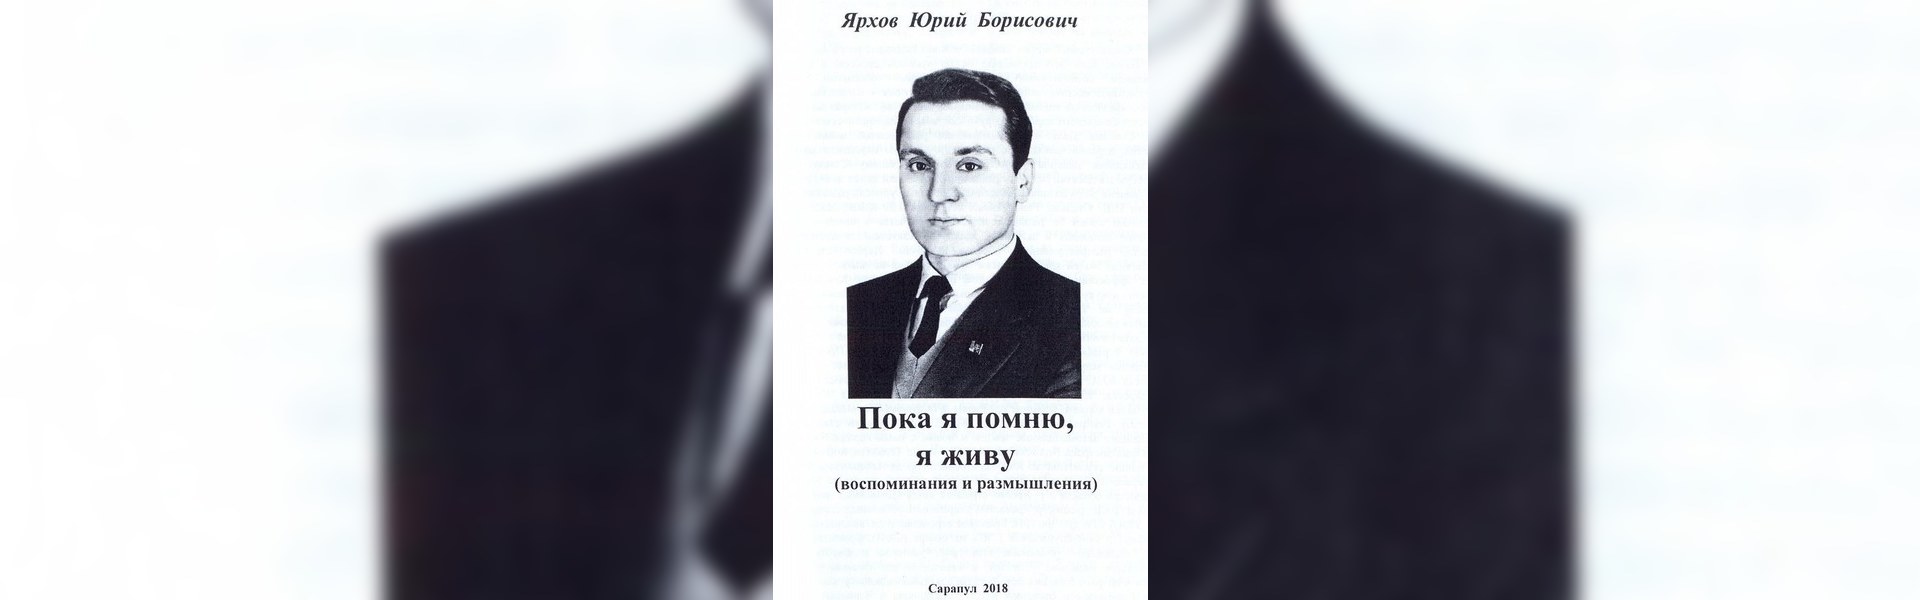 Юрий Борисович Романов